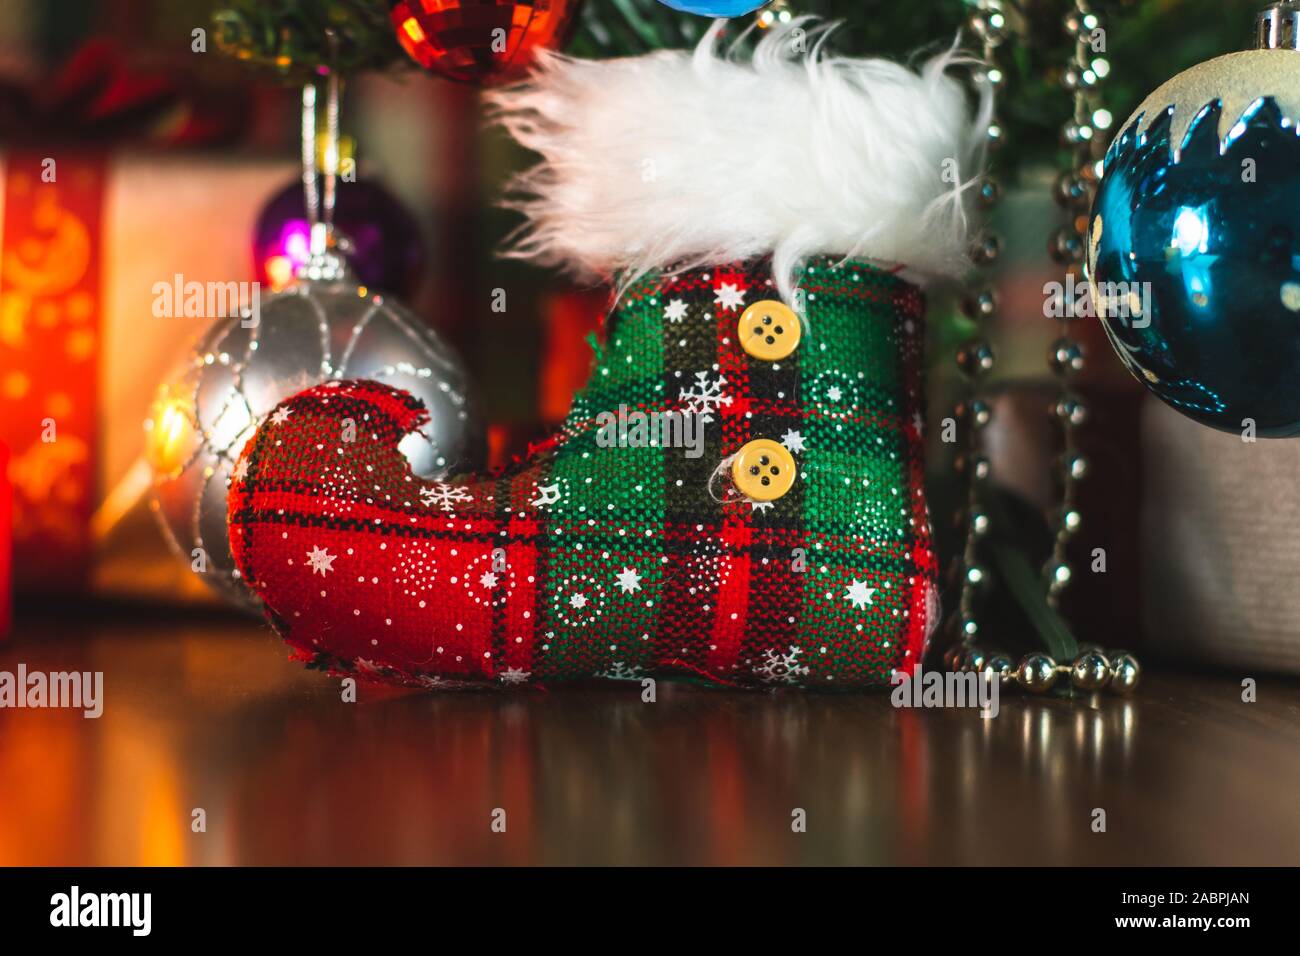 Décorations de Noël et des ornements sous un arbre de Noël autour des vacances. Célébration festive. Banque D'Images